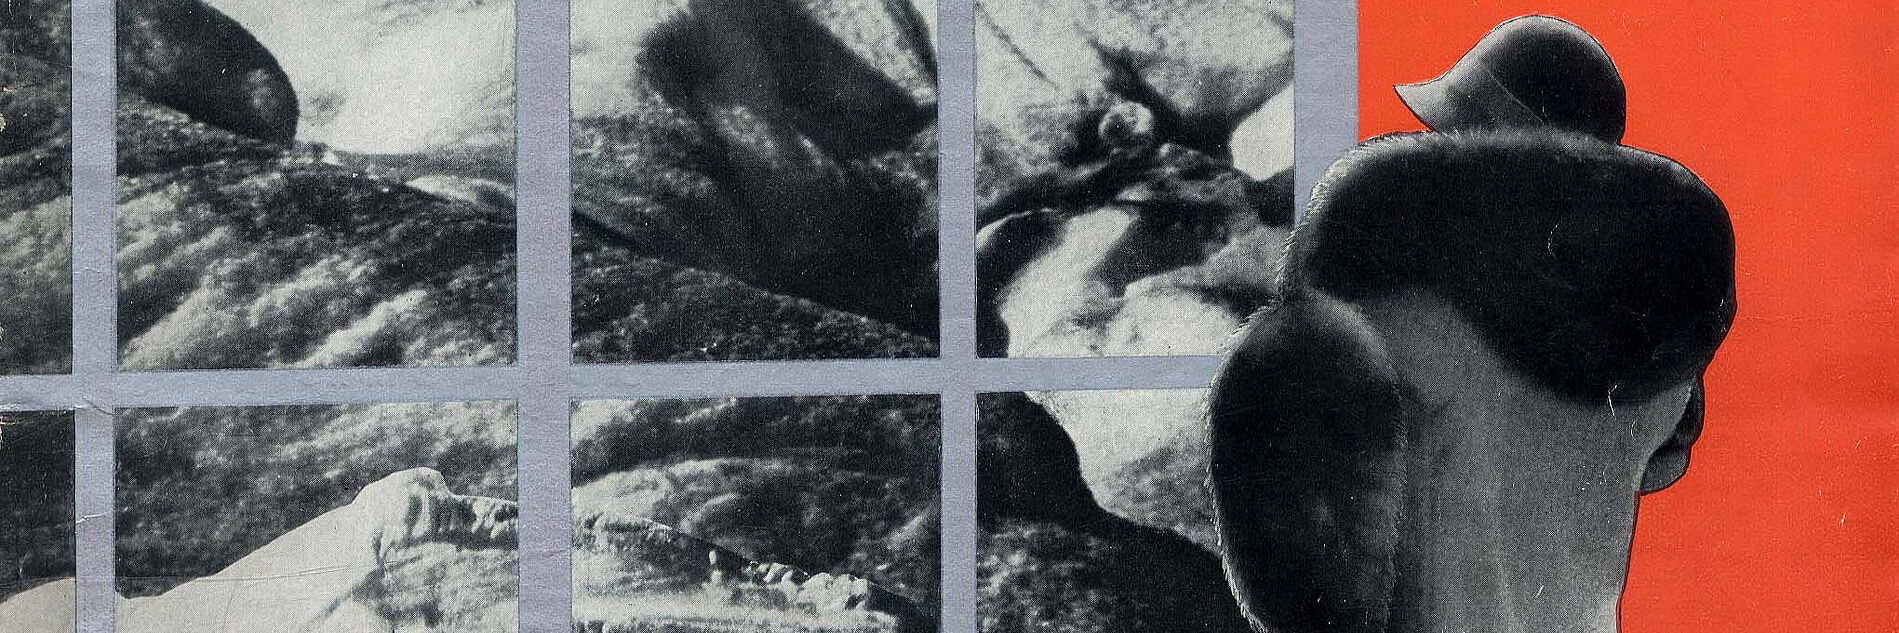 Die neue linie, Heft 1, September 1929. Umschlagzeichnung von László Moholy-Nagy.